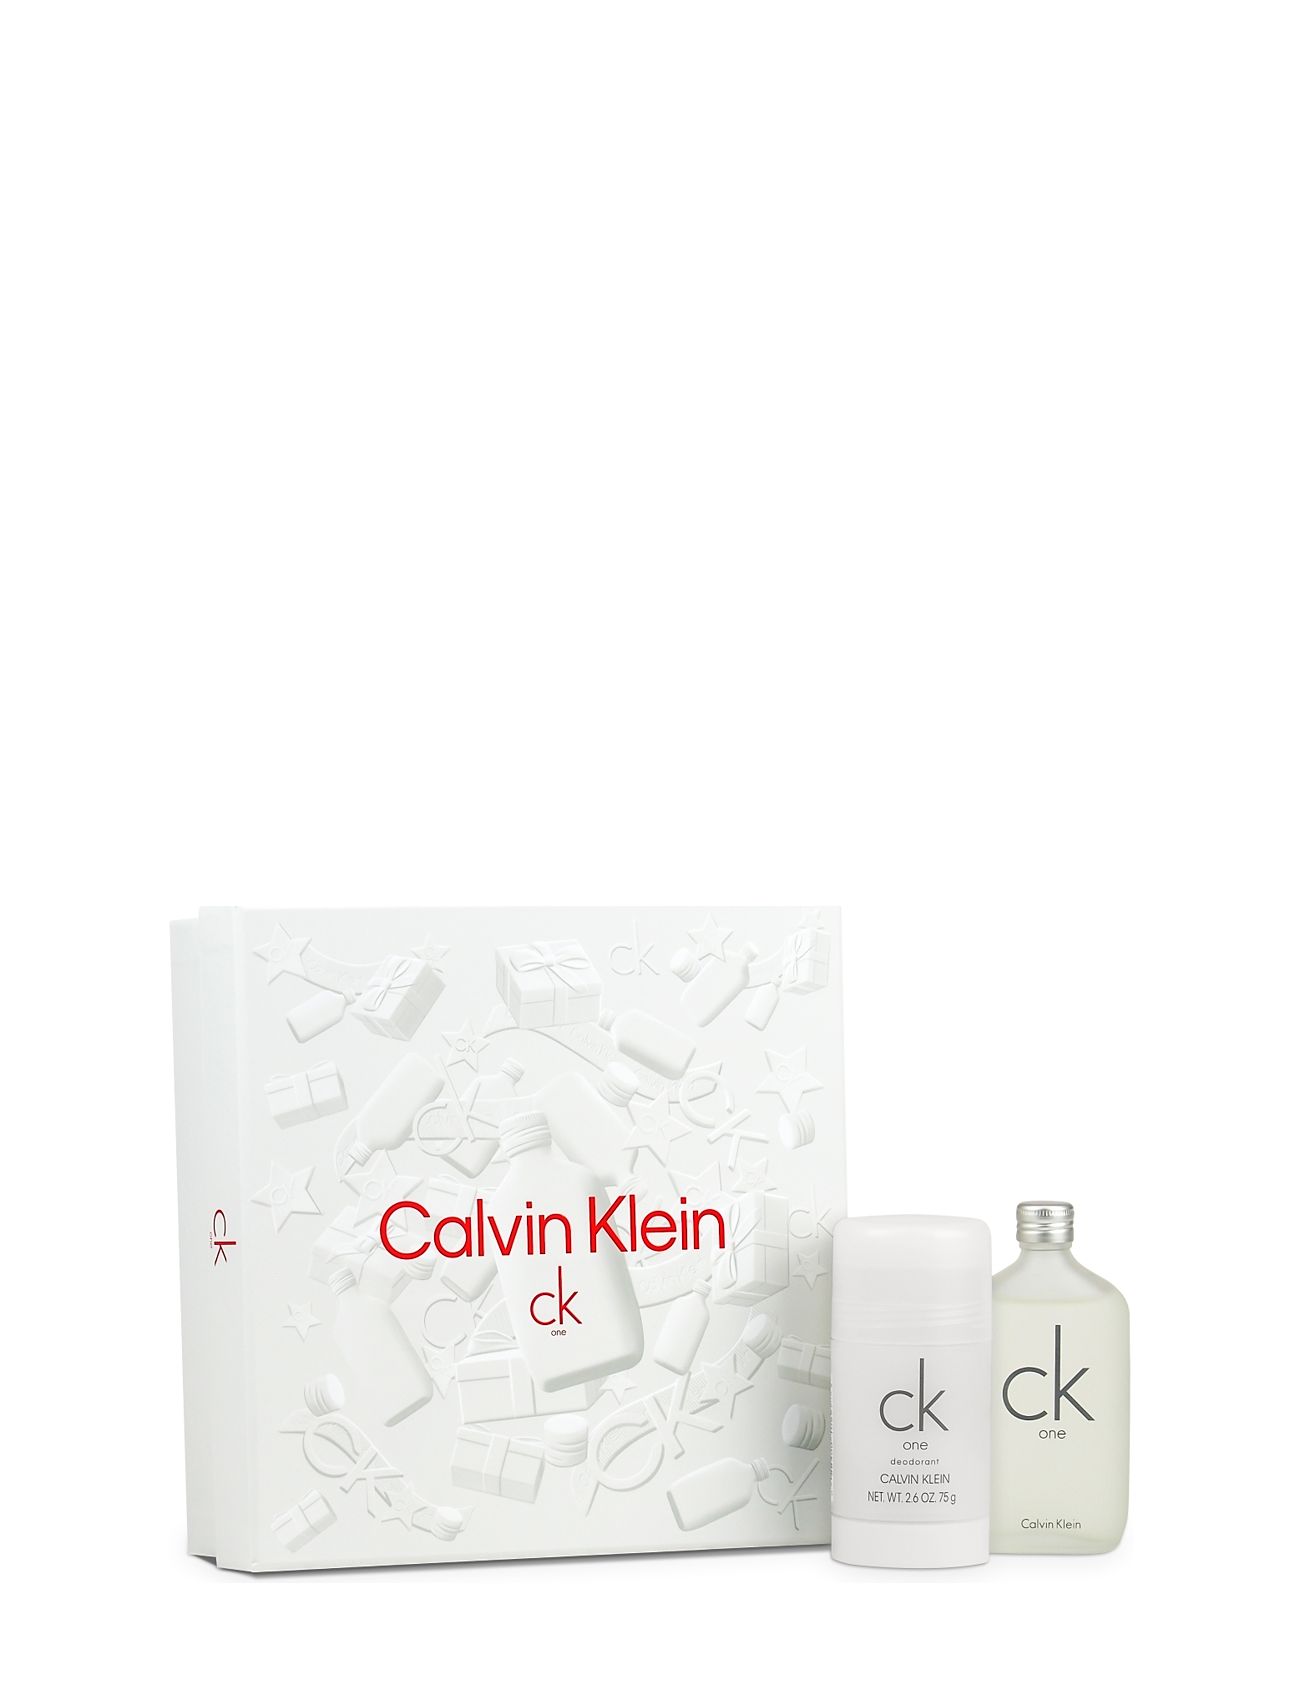 Edt Deo Klein Klein - Deostift cremer Calvin Fragrance One Ck 50ml/ Stick & 75ml Calvin